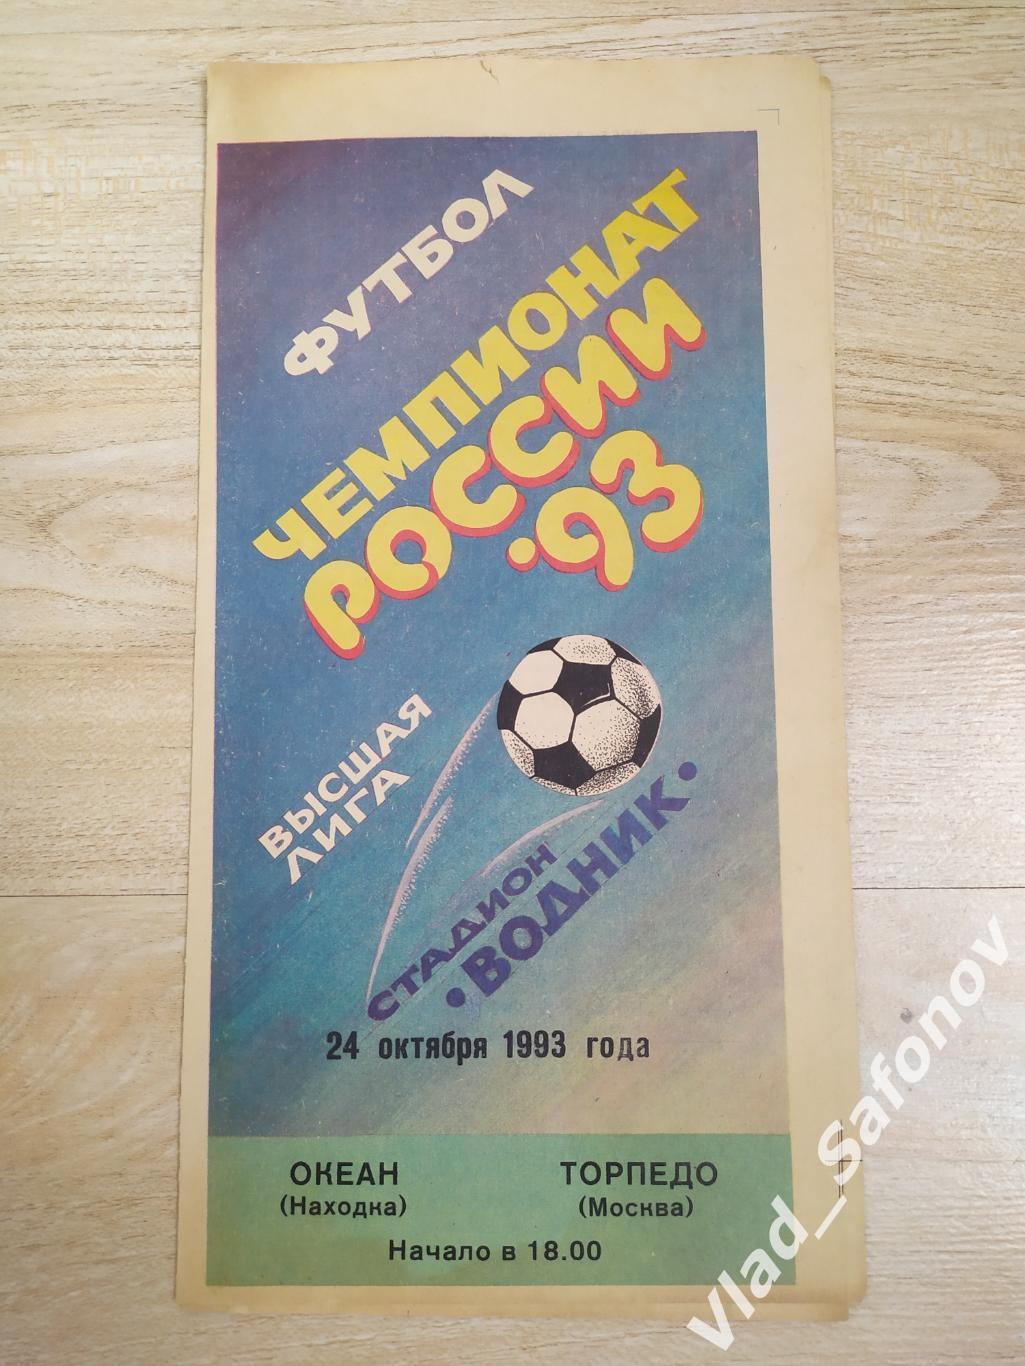 Океан(Находка) - Торпедо(Москва). Высшая лига. 24/10/1993